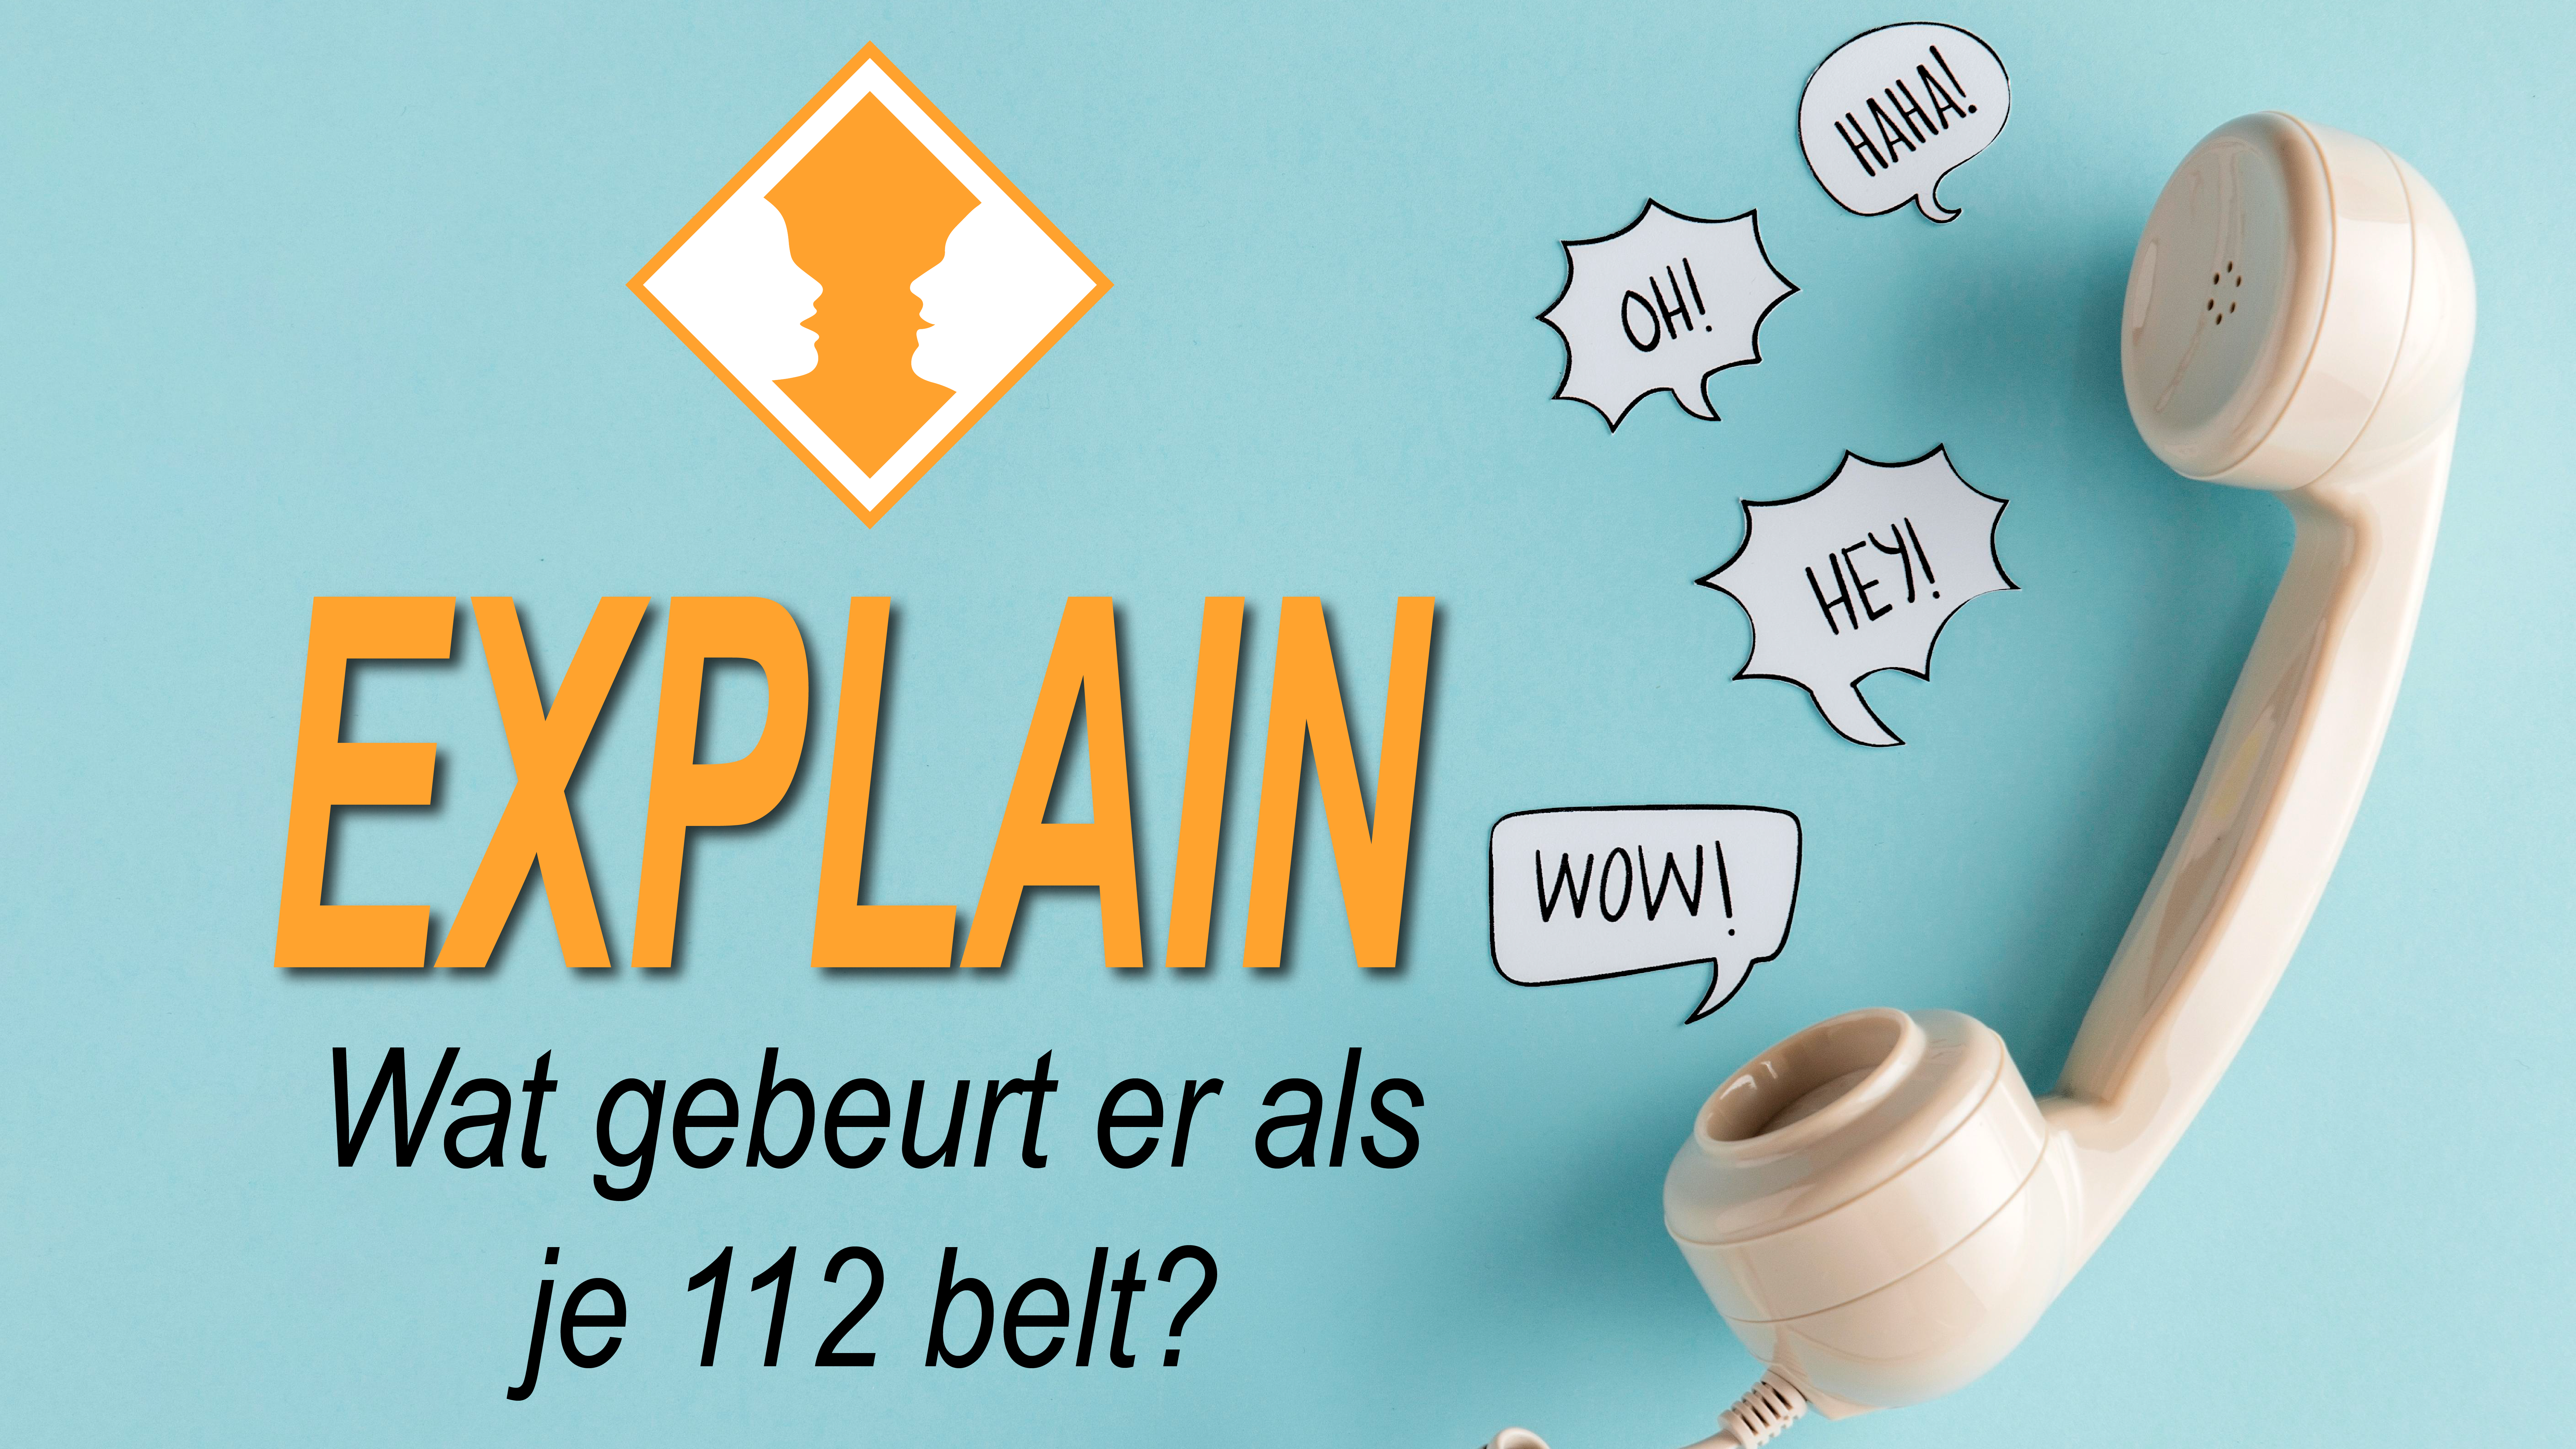 Wat gebeurt er als je 112 belt? – EXPLAIN